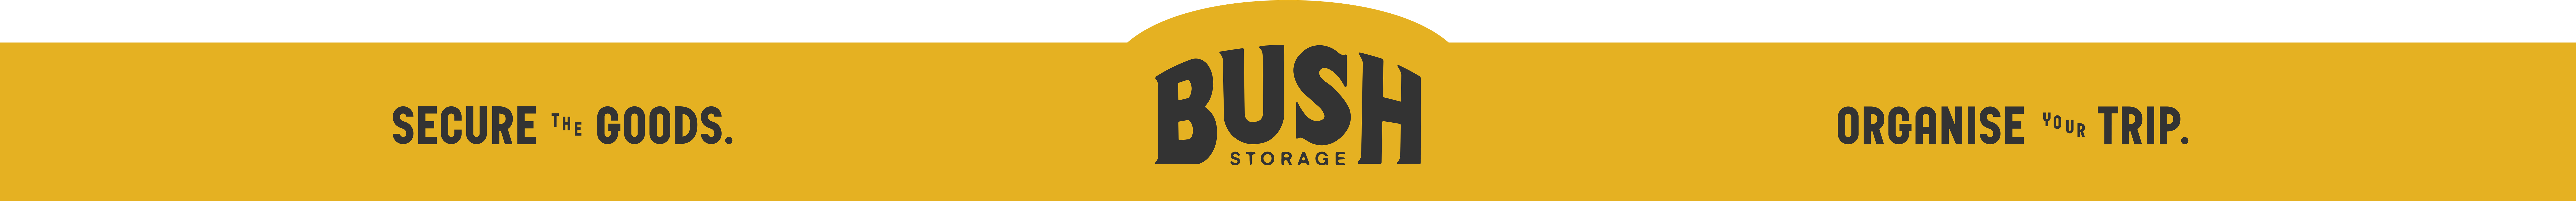 Bush-Storage-Footer